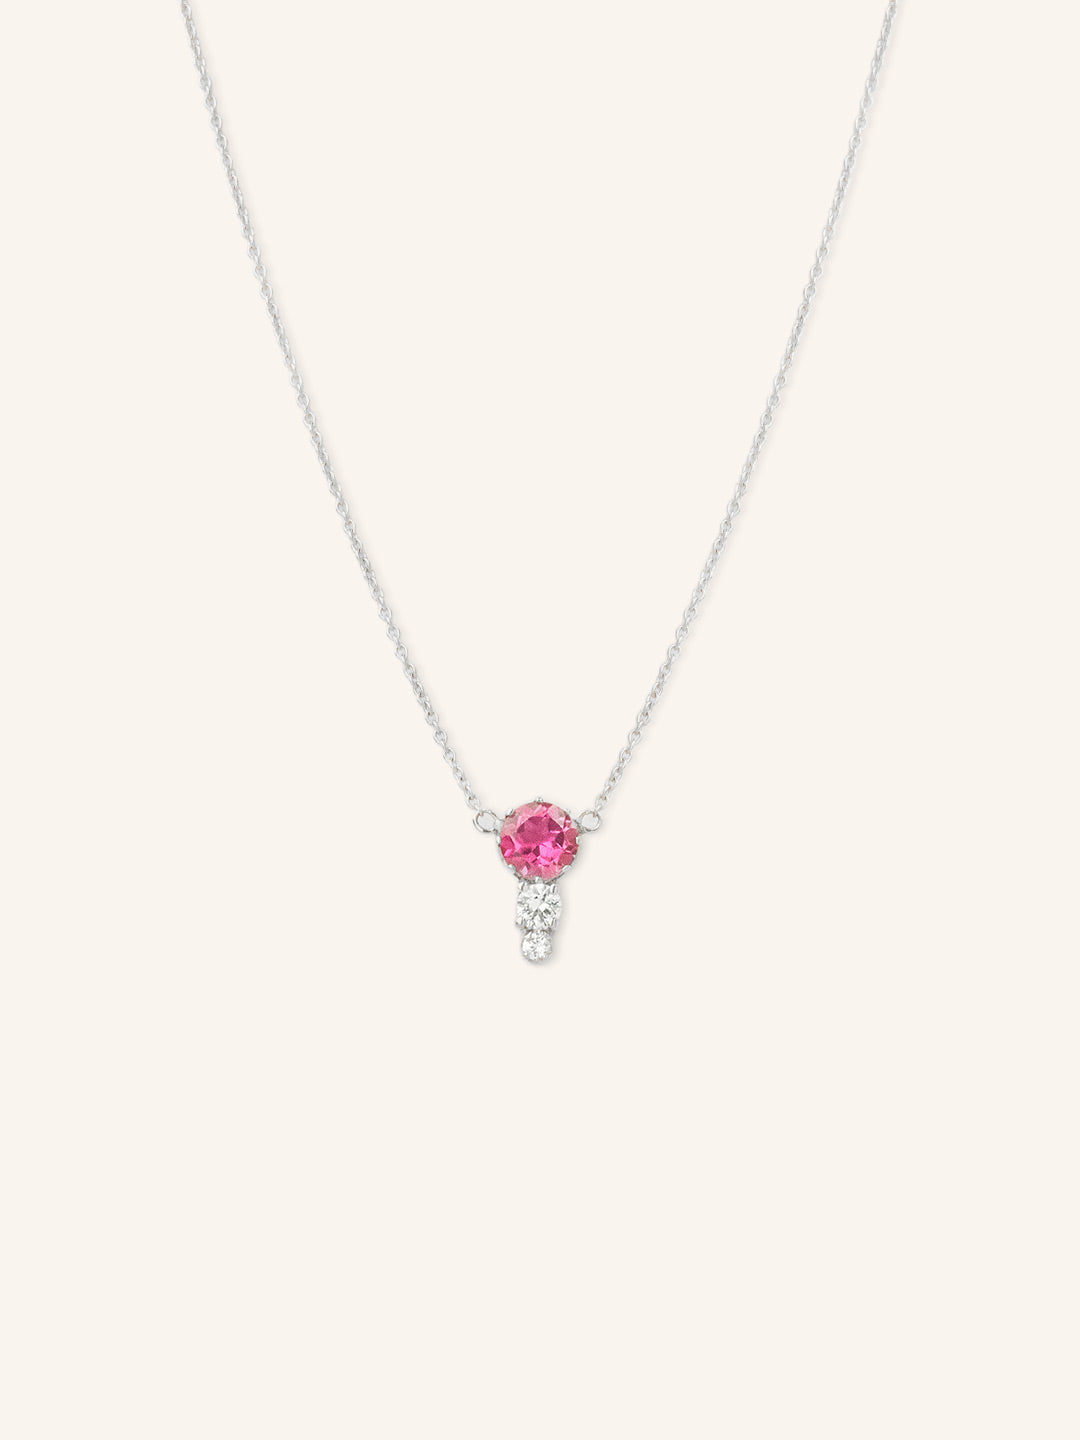 Blushing Rose Necklace - Pink Tourmaline